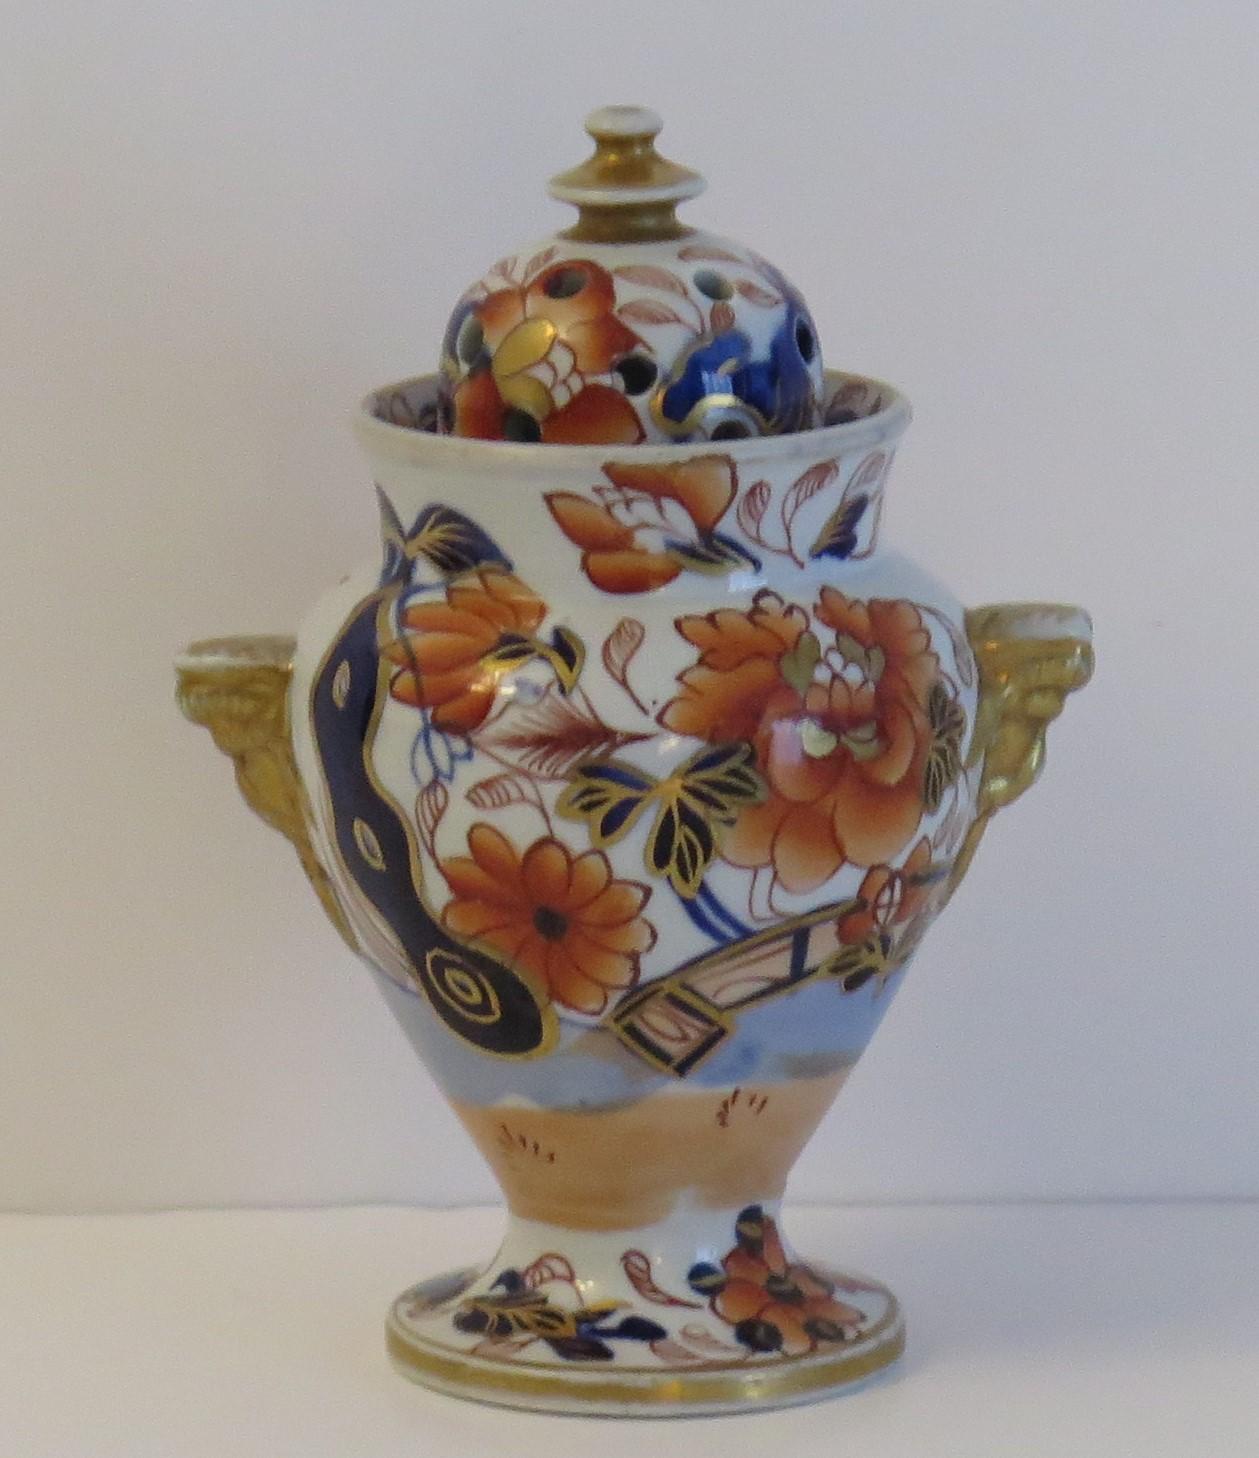 Es handelt sich um eine seltene geformte Eisenstein-Deckelvase in Form einer Pot-Pourri-Vase mit vergoldetem und handbemaltem Fence-Japan-Muster, hergestellt von der Mason's Factory im frühen 19. Jahrhundert, um 1817.

Die Vase hat ein gutes